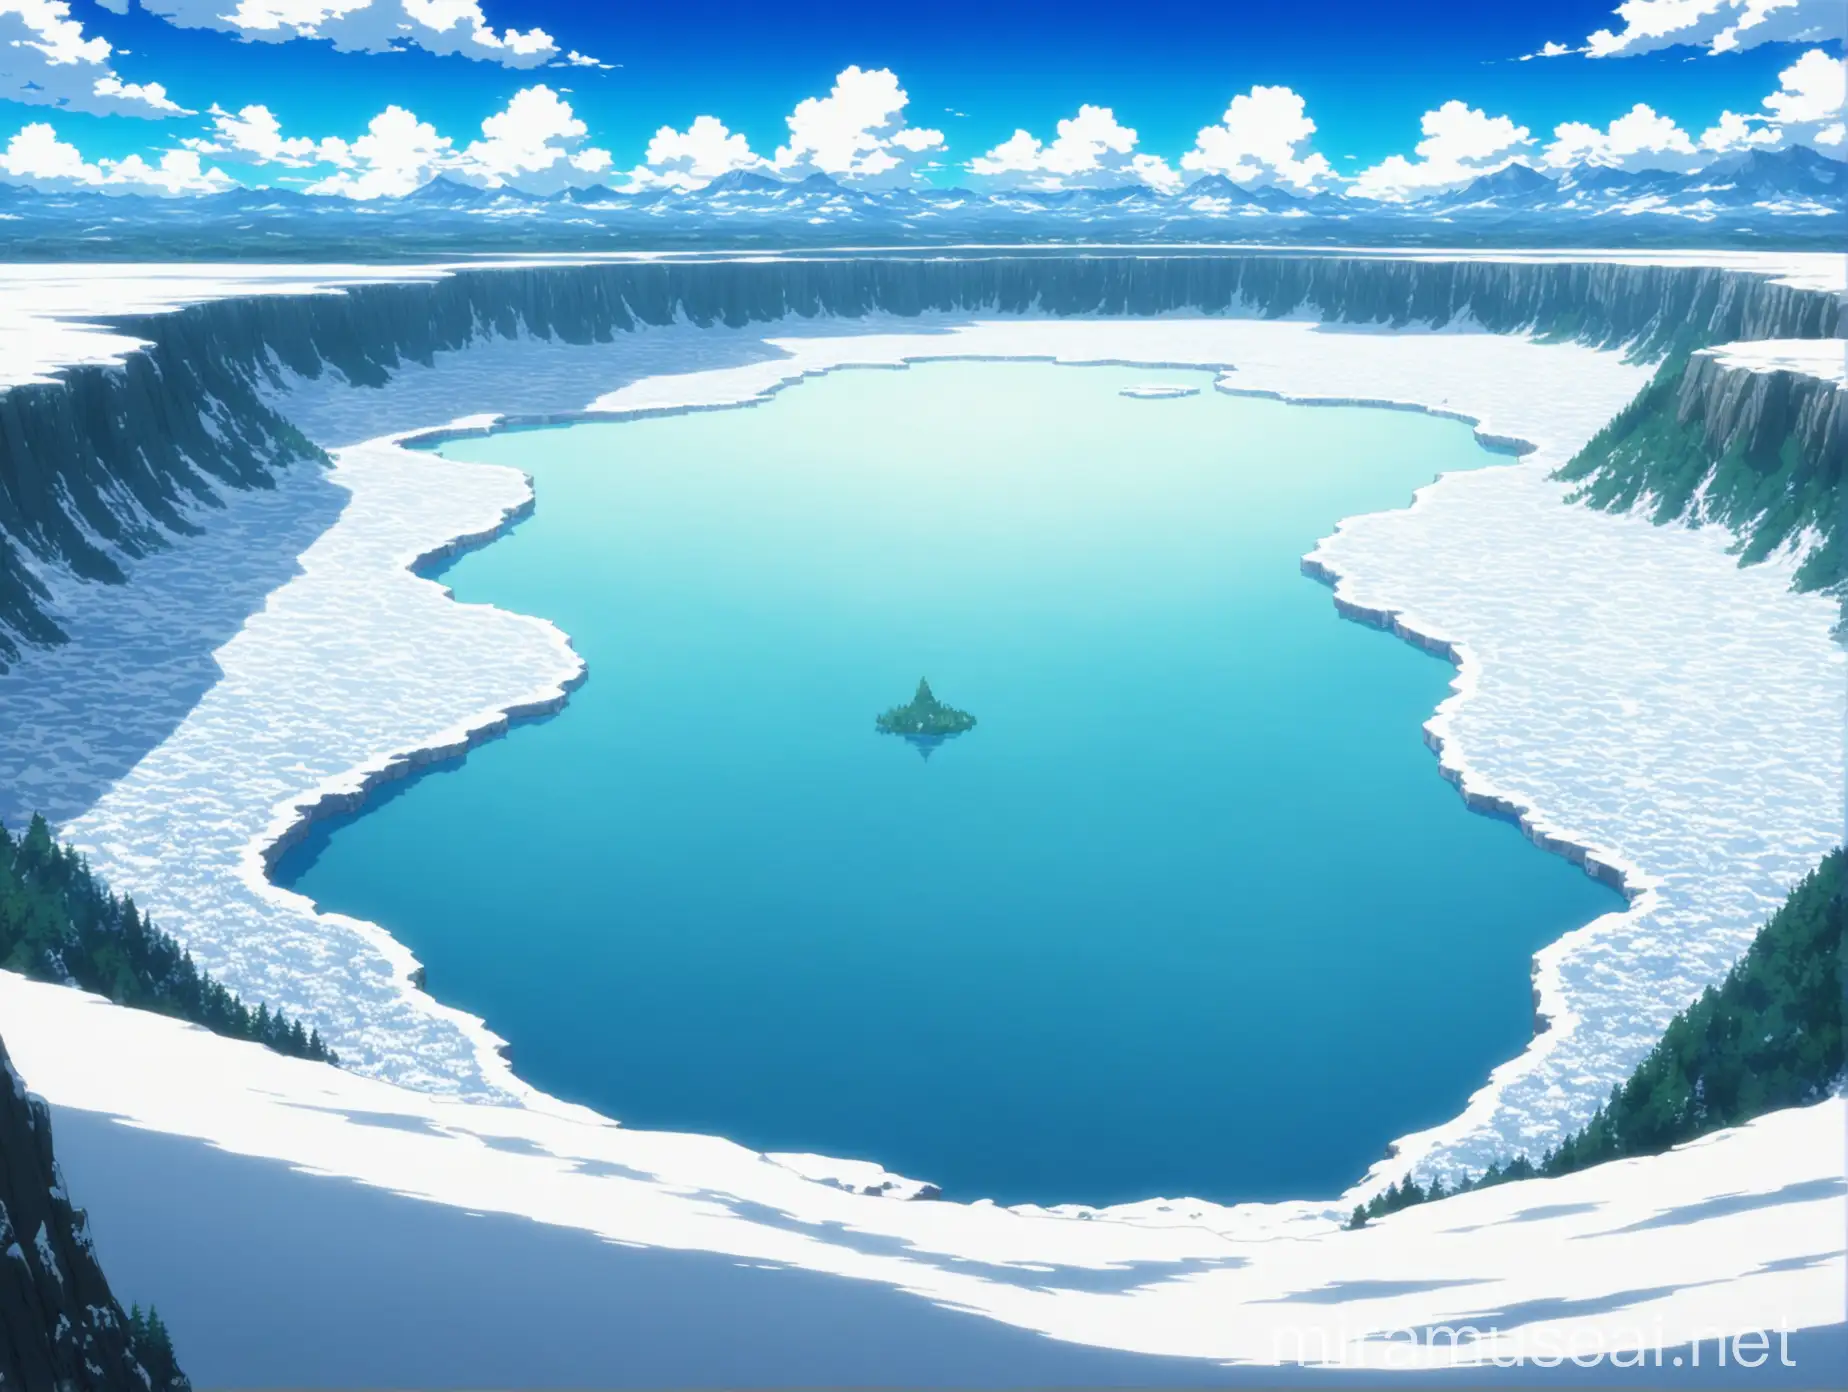 Snowy Plateau Overlooking Vast Lake Anime Landscape Art